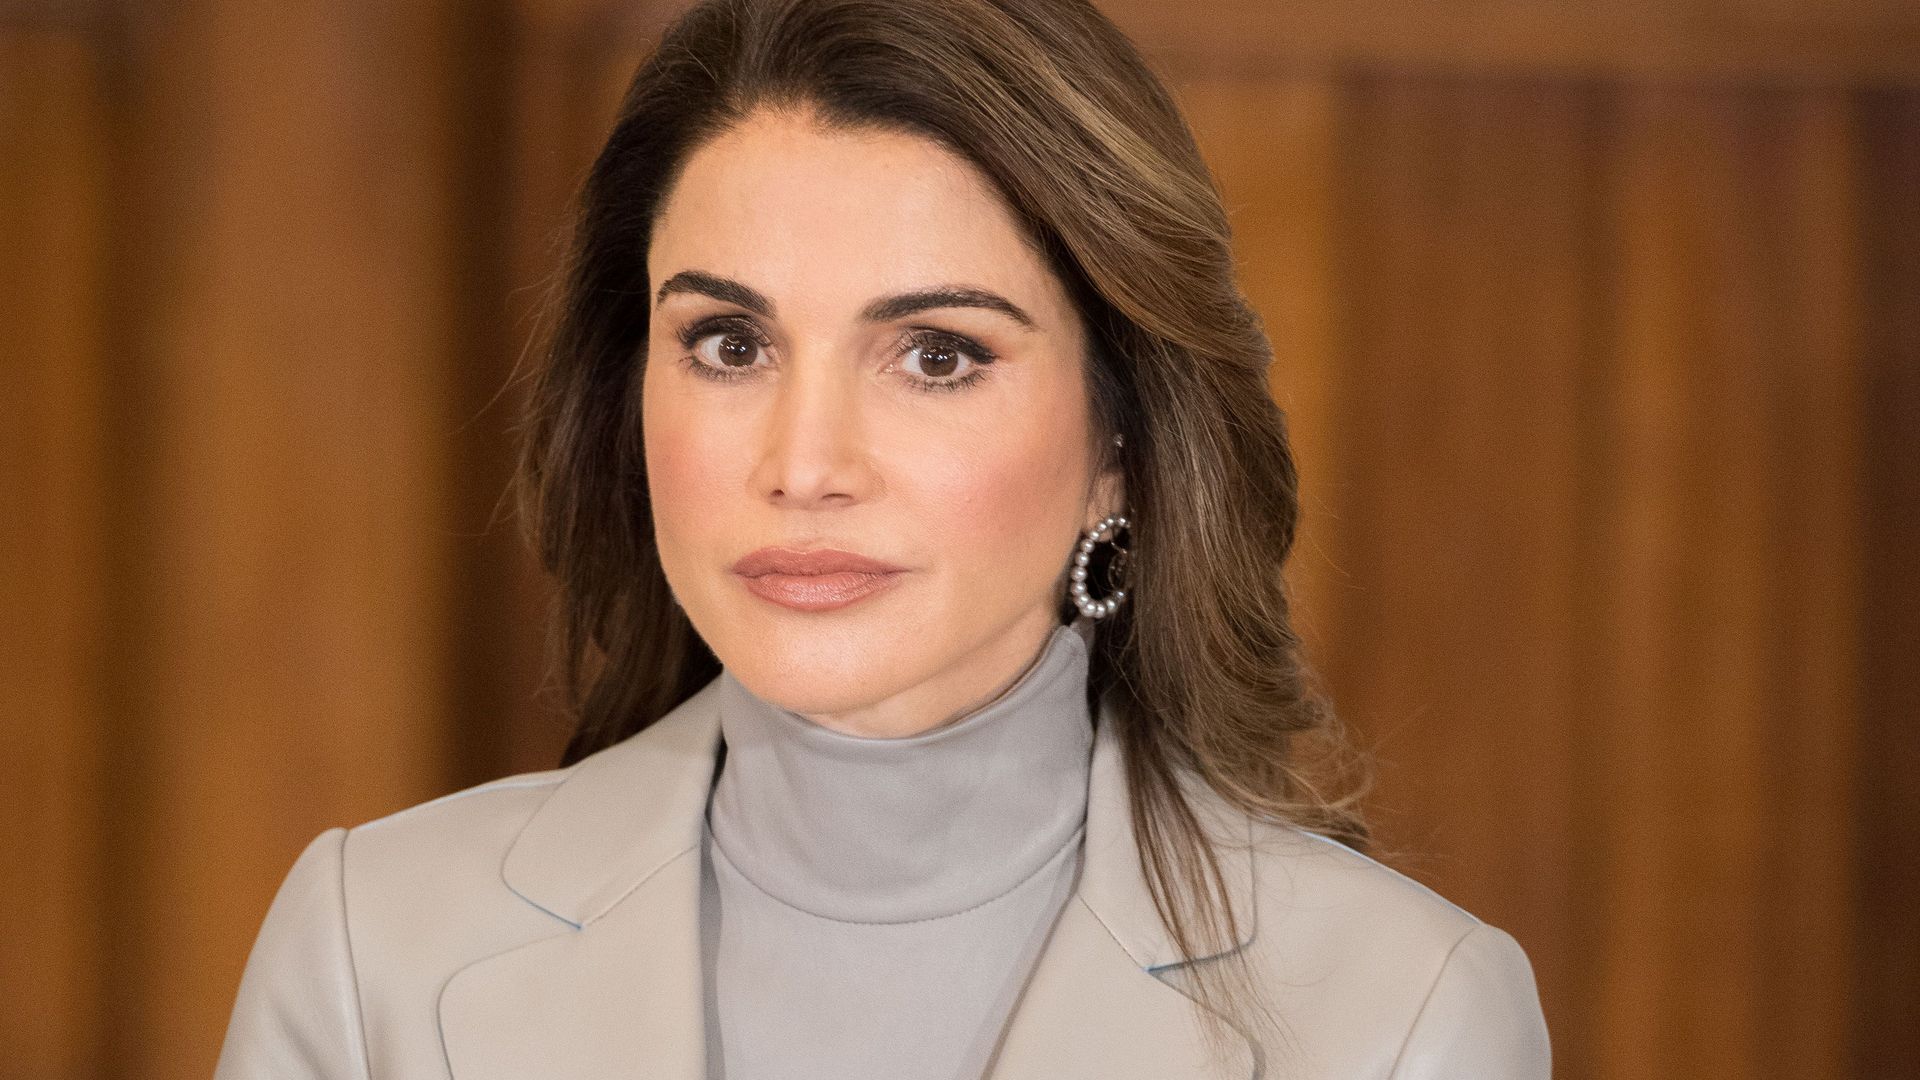 Jordanian royals visit to The Netherlands - 21 Mar 2018